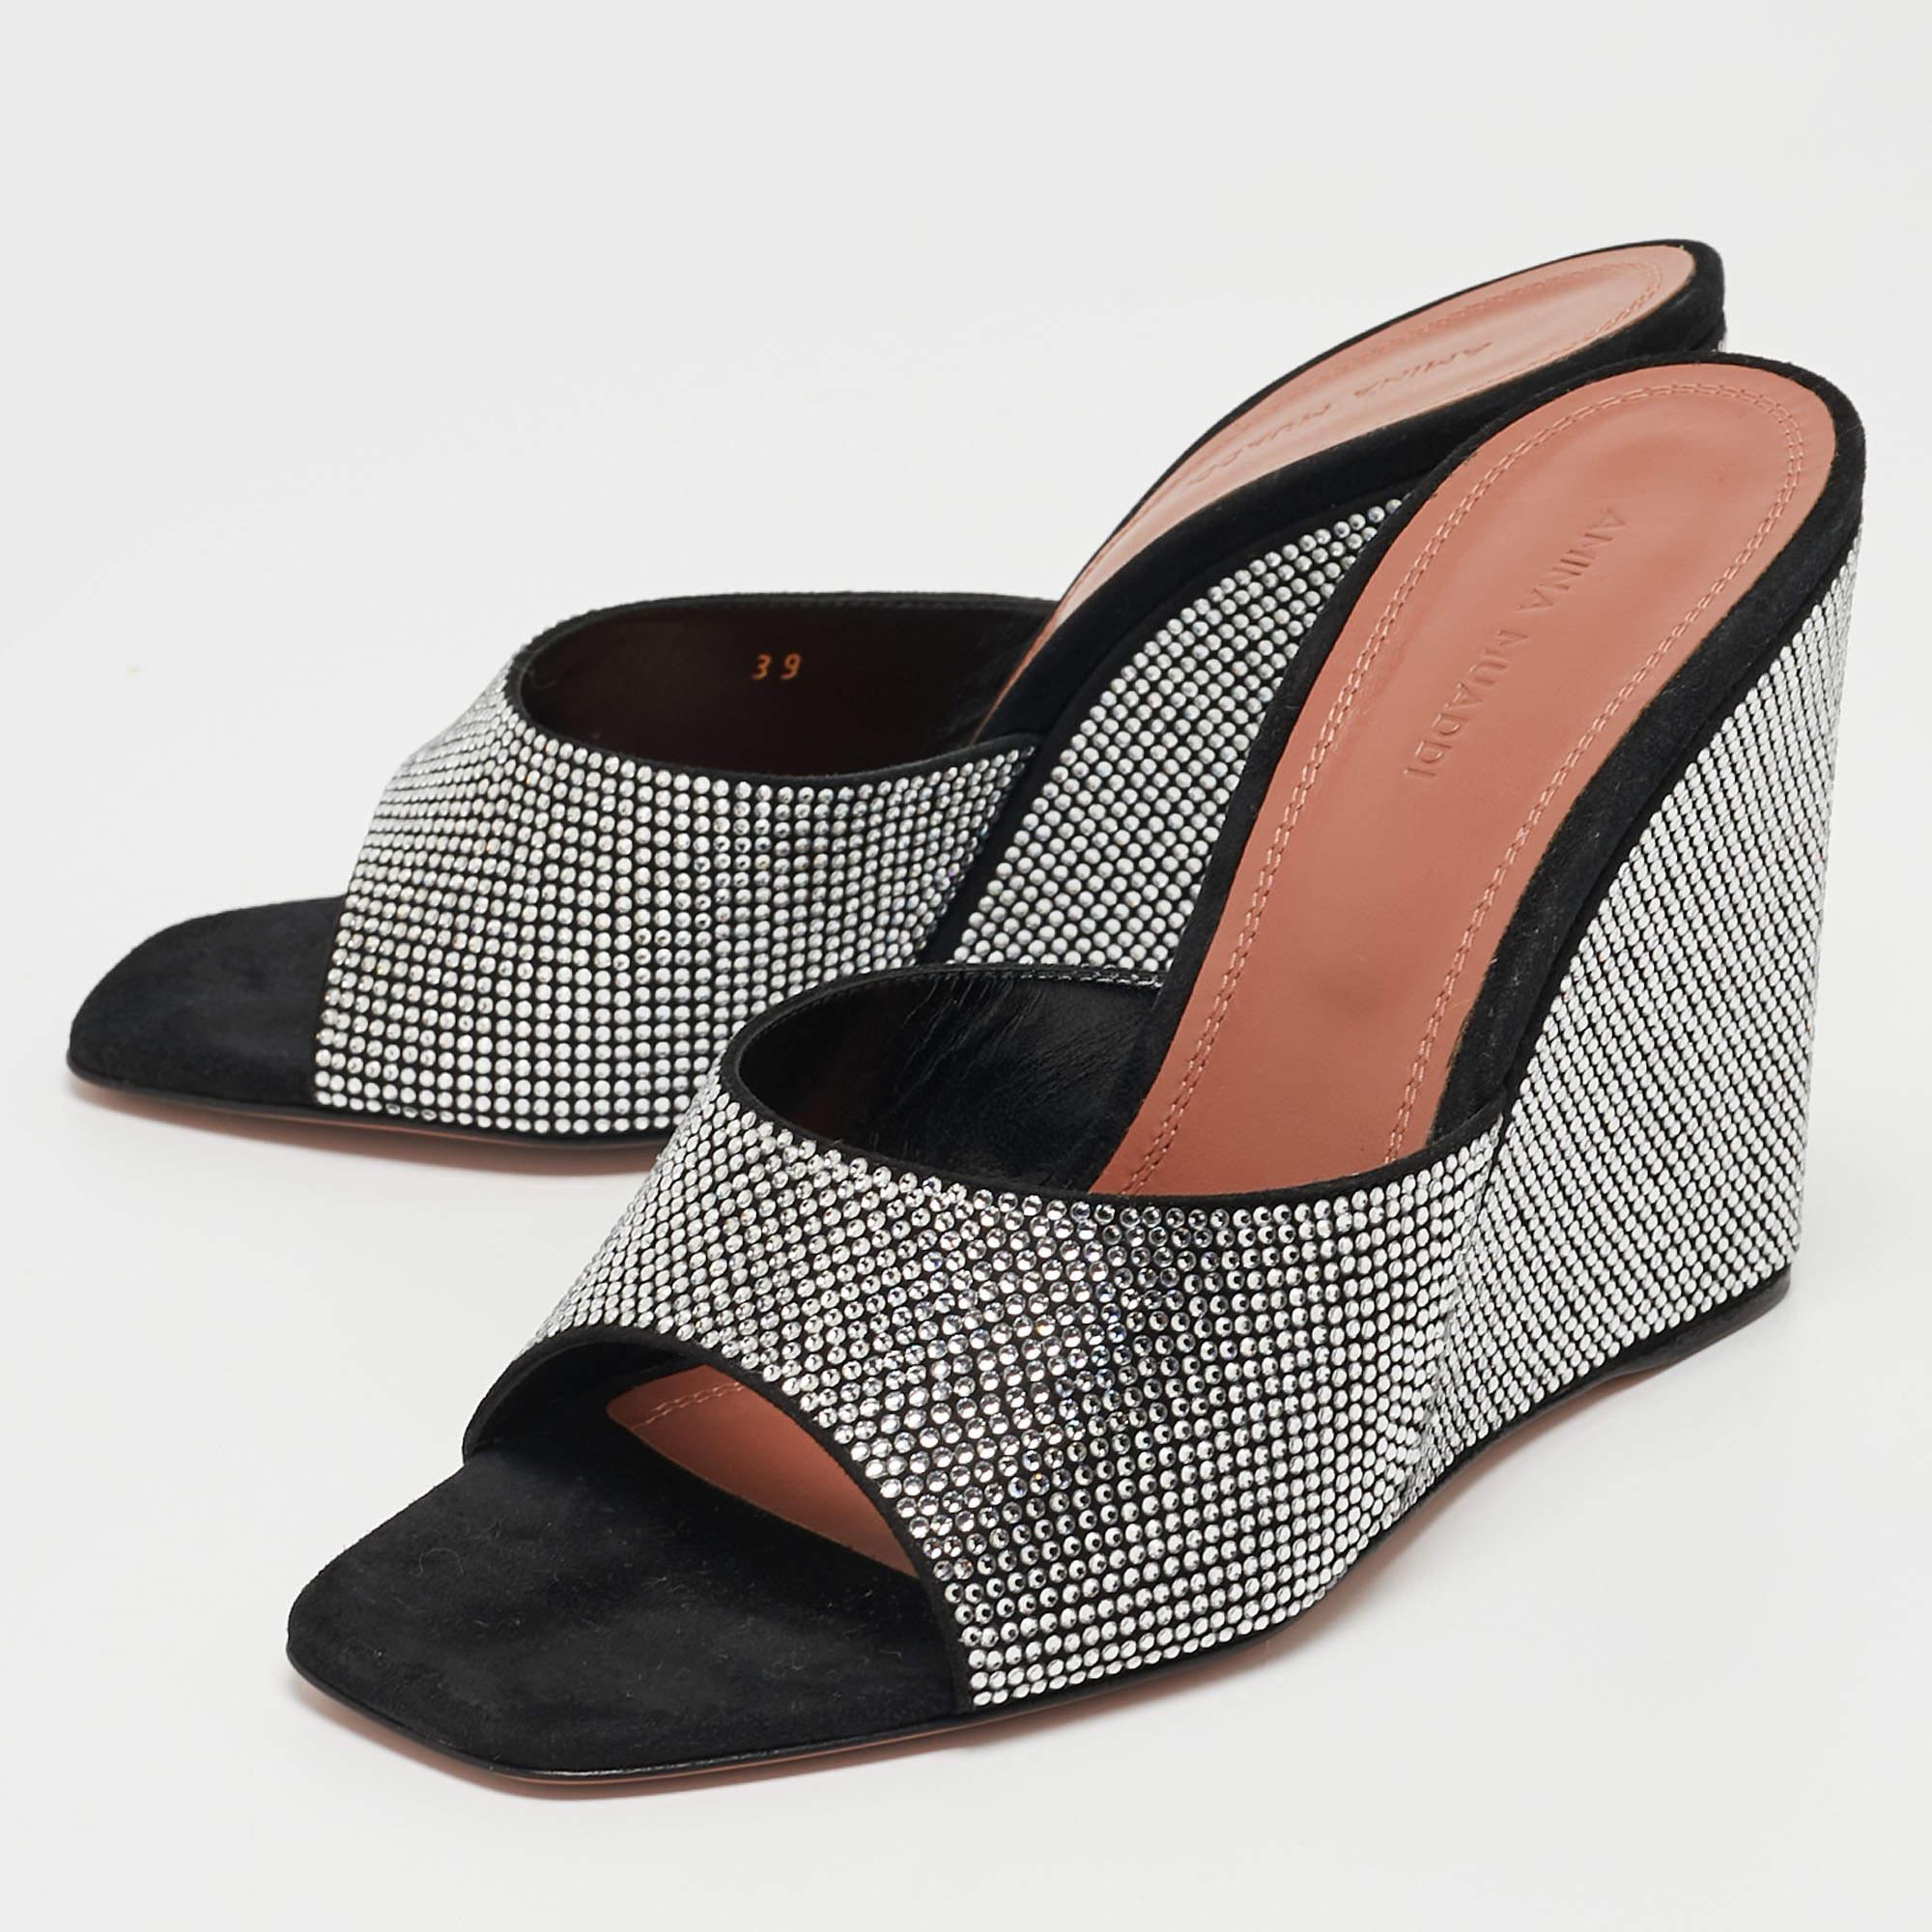 Une paire de sandales classique est un must dans chaque collection, et lorsque le design est signé Amina Muaddi, il est sûr d'ajouter une déclaration de luxe à votre garde-robe. Ces sandales vous raviront à coup sûr !

Comprend : Boîte d'origine